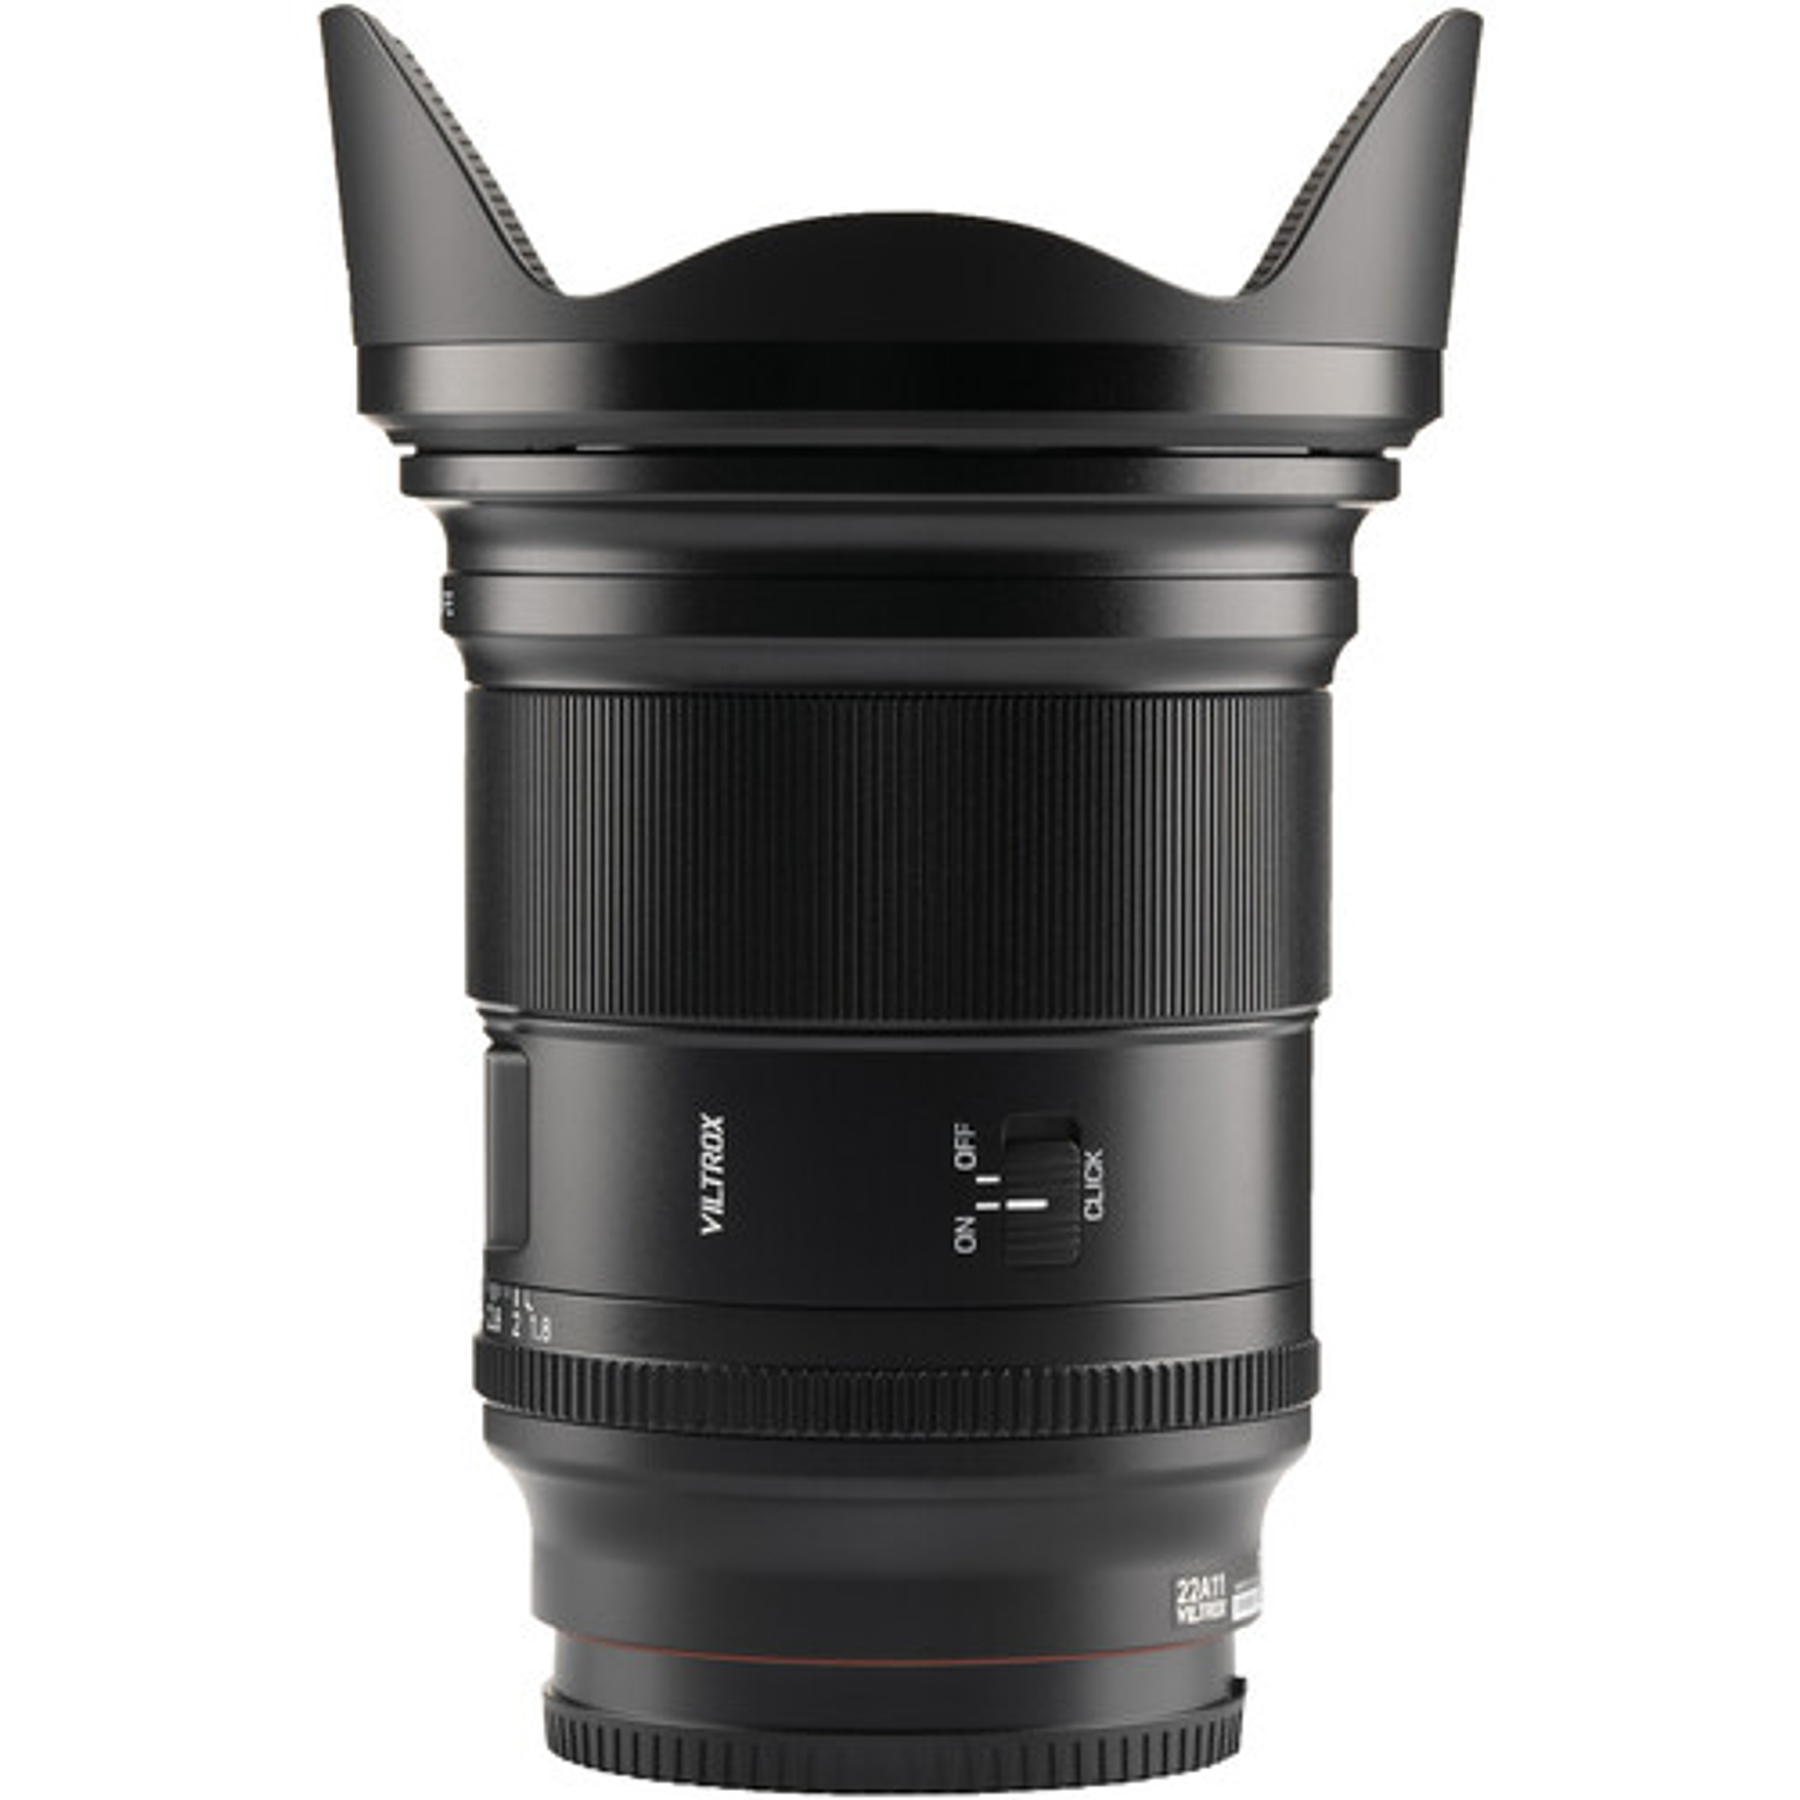 Viltrox AF 16mm f/1.8 FE Lens (Sony E)